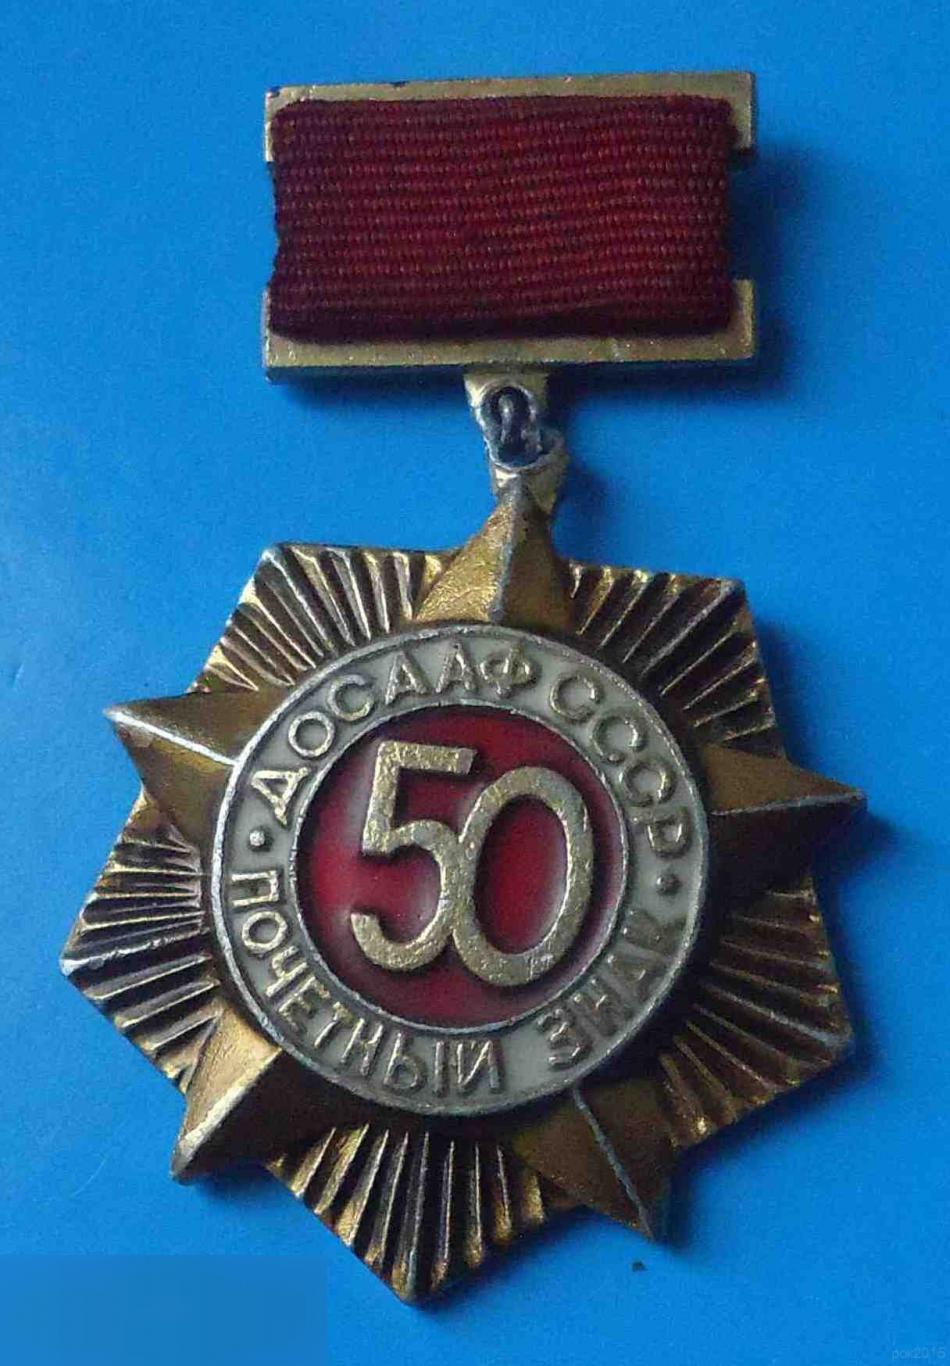 50 лет Почетный знак ДОСААФ СССР